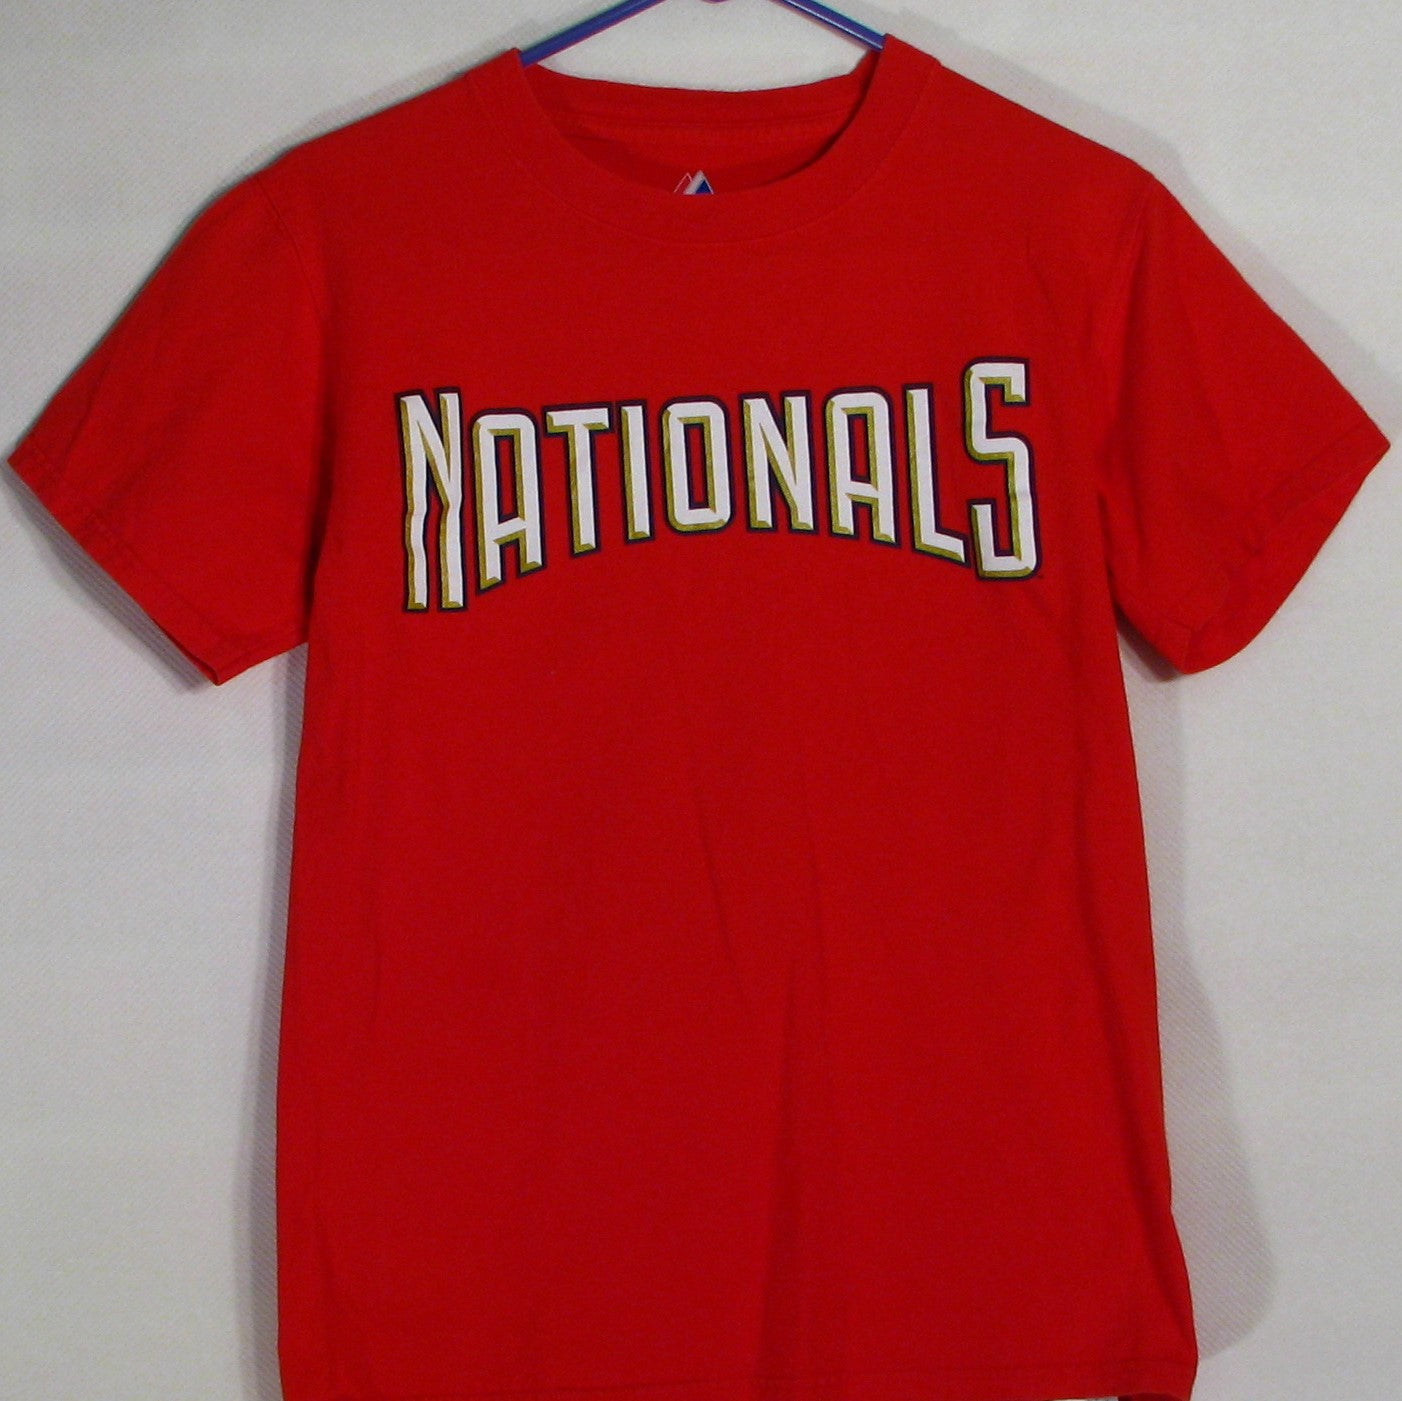 nationals t shirt